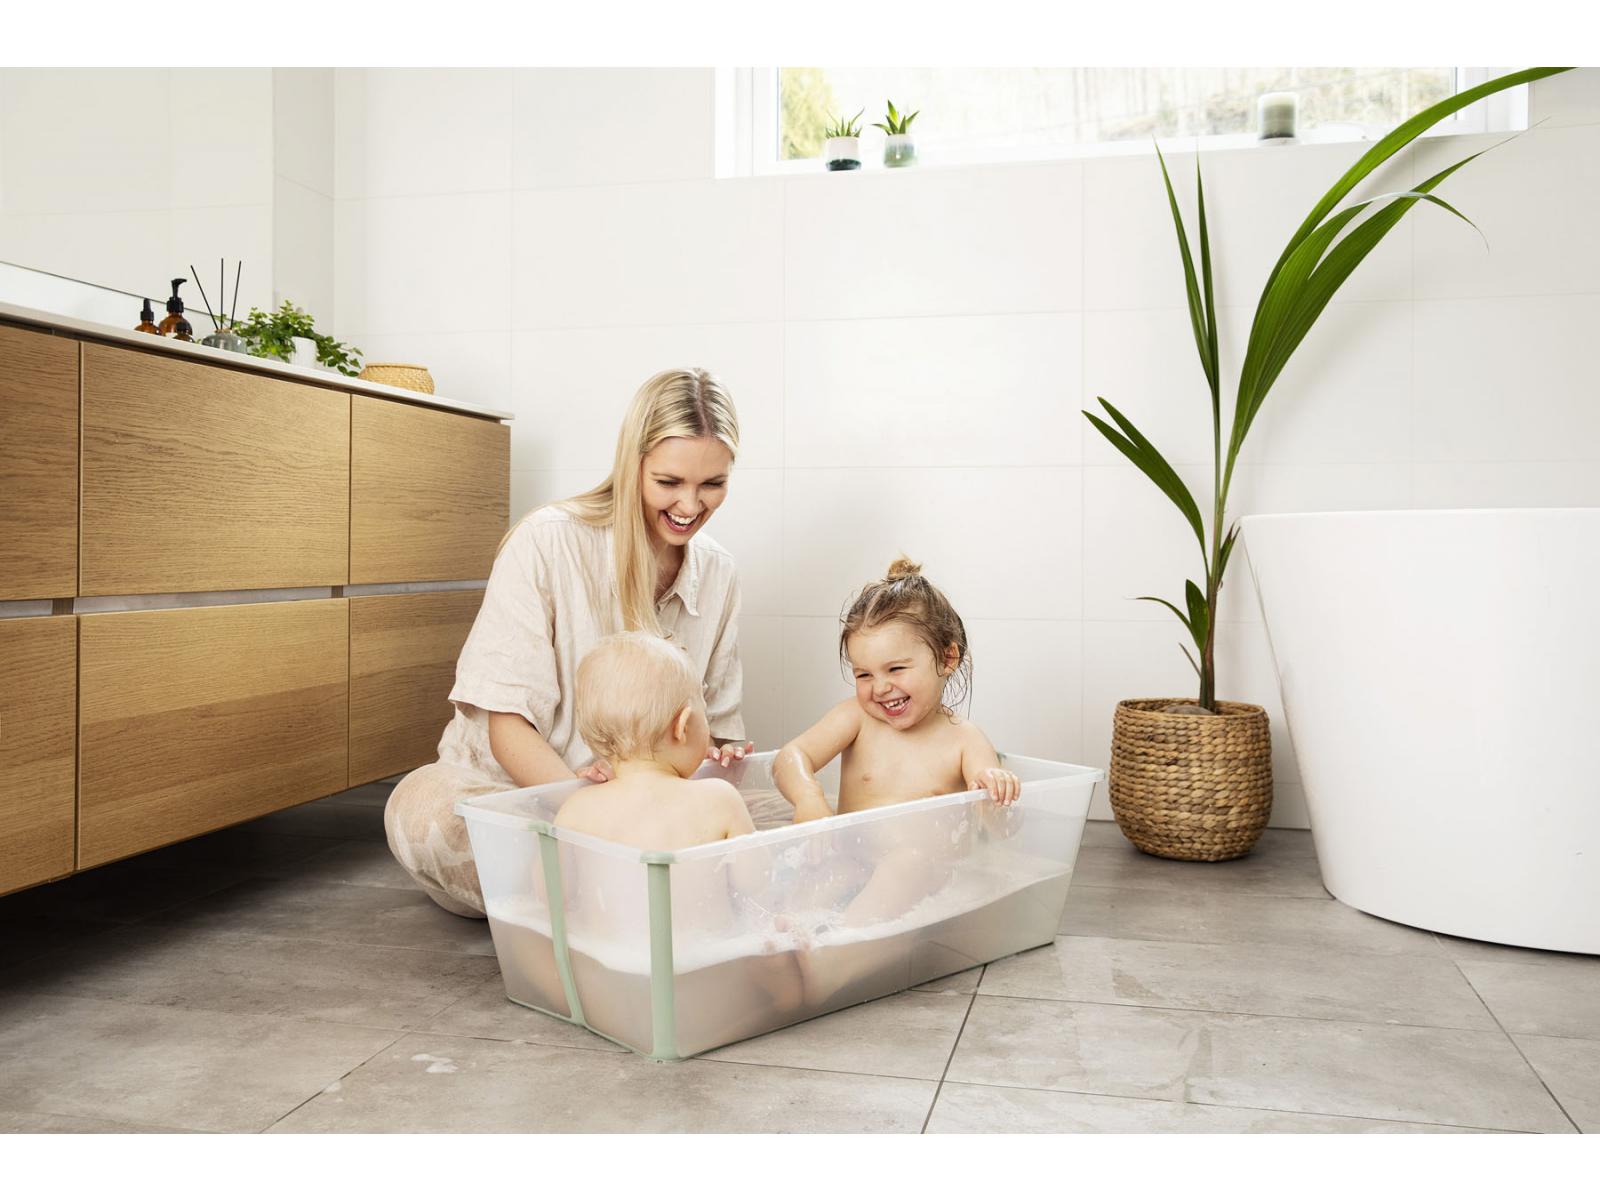 Stokke - Baignoire pliante Flexi Bath® XL grande taille transparent vert  (Transparent Green)